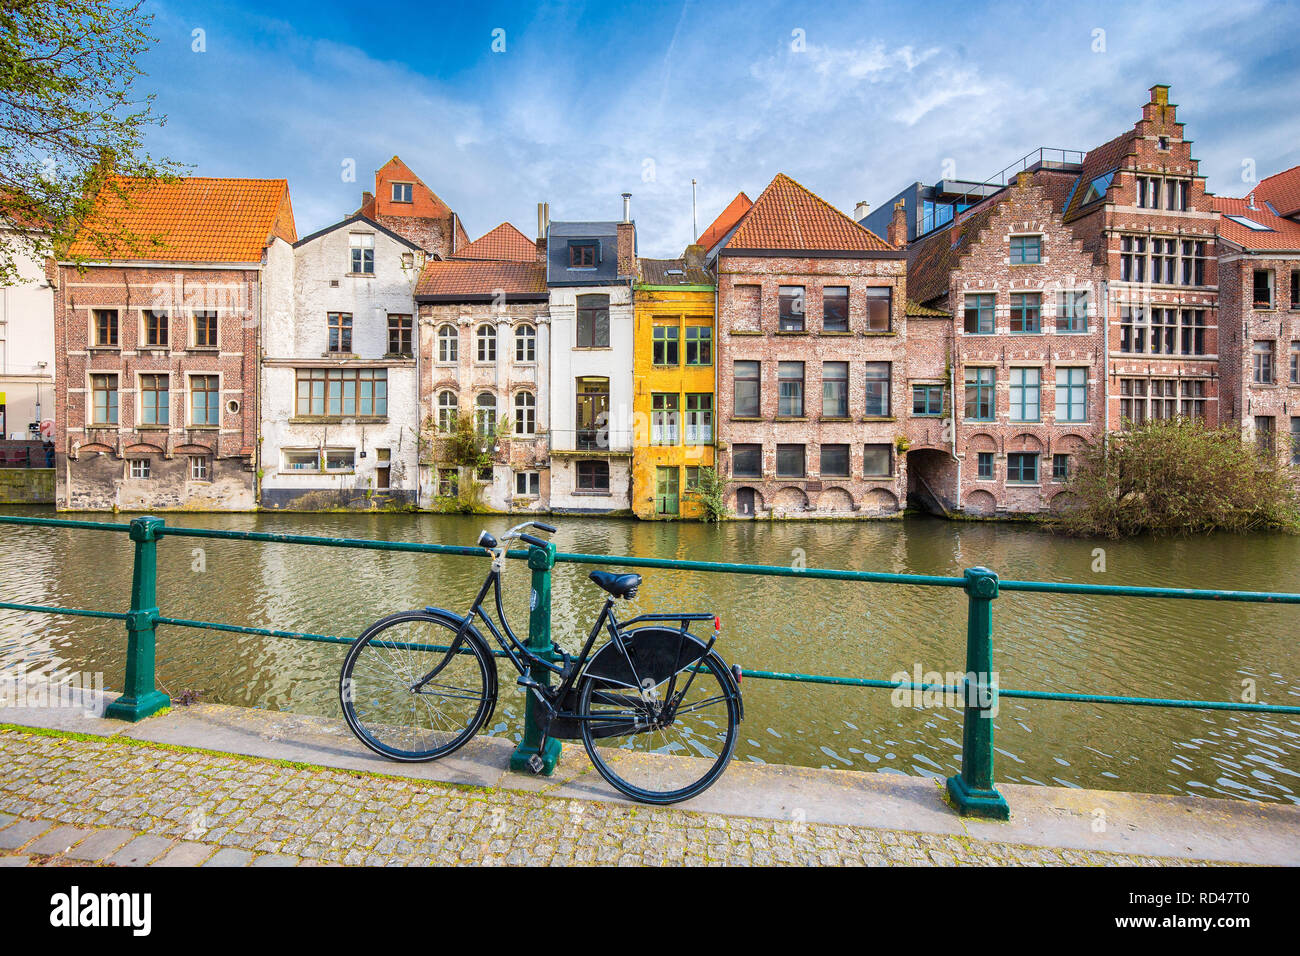 Bellissima vista del centro storico della città di Gand con tradizionali edifici colorati e la vecchia bicicletta, la regione delle Fiandre, in Belgio Foto Stock